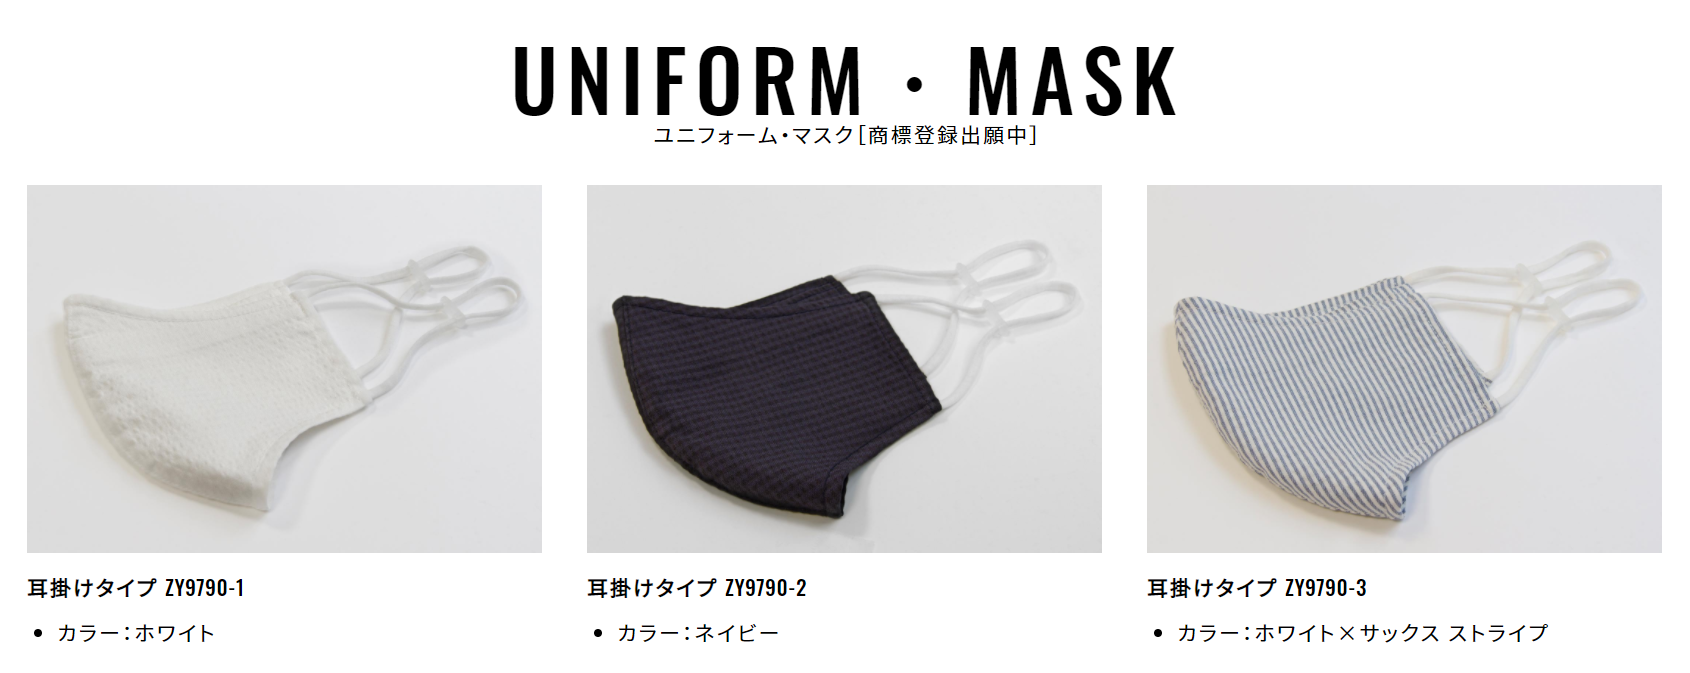 ユニフォーム・マスク